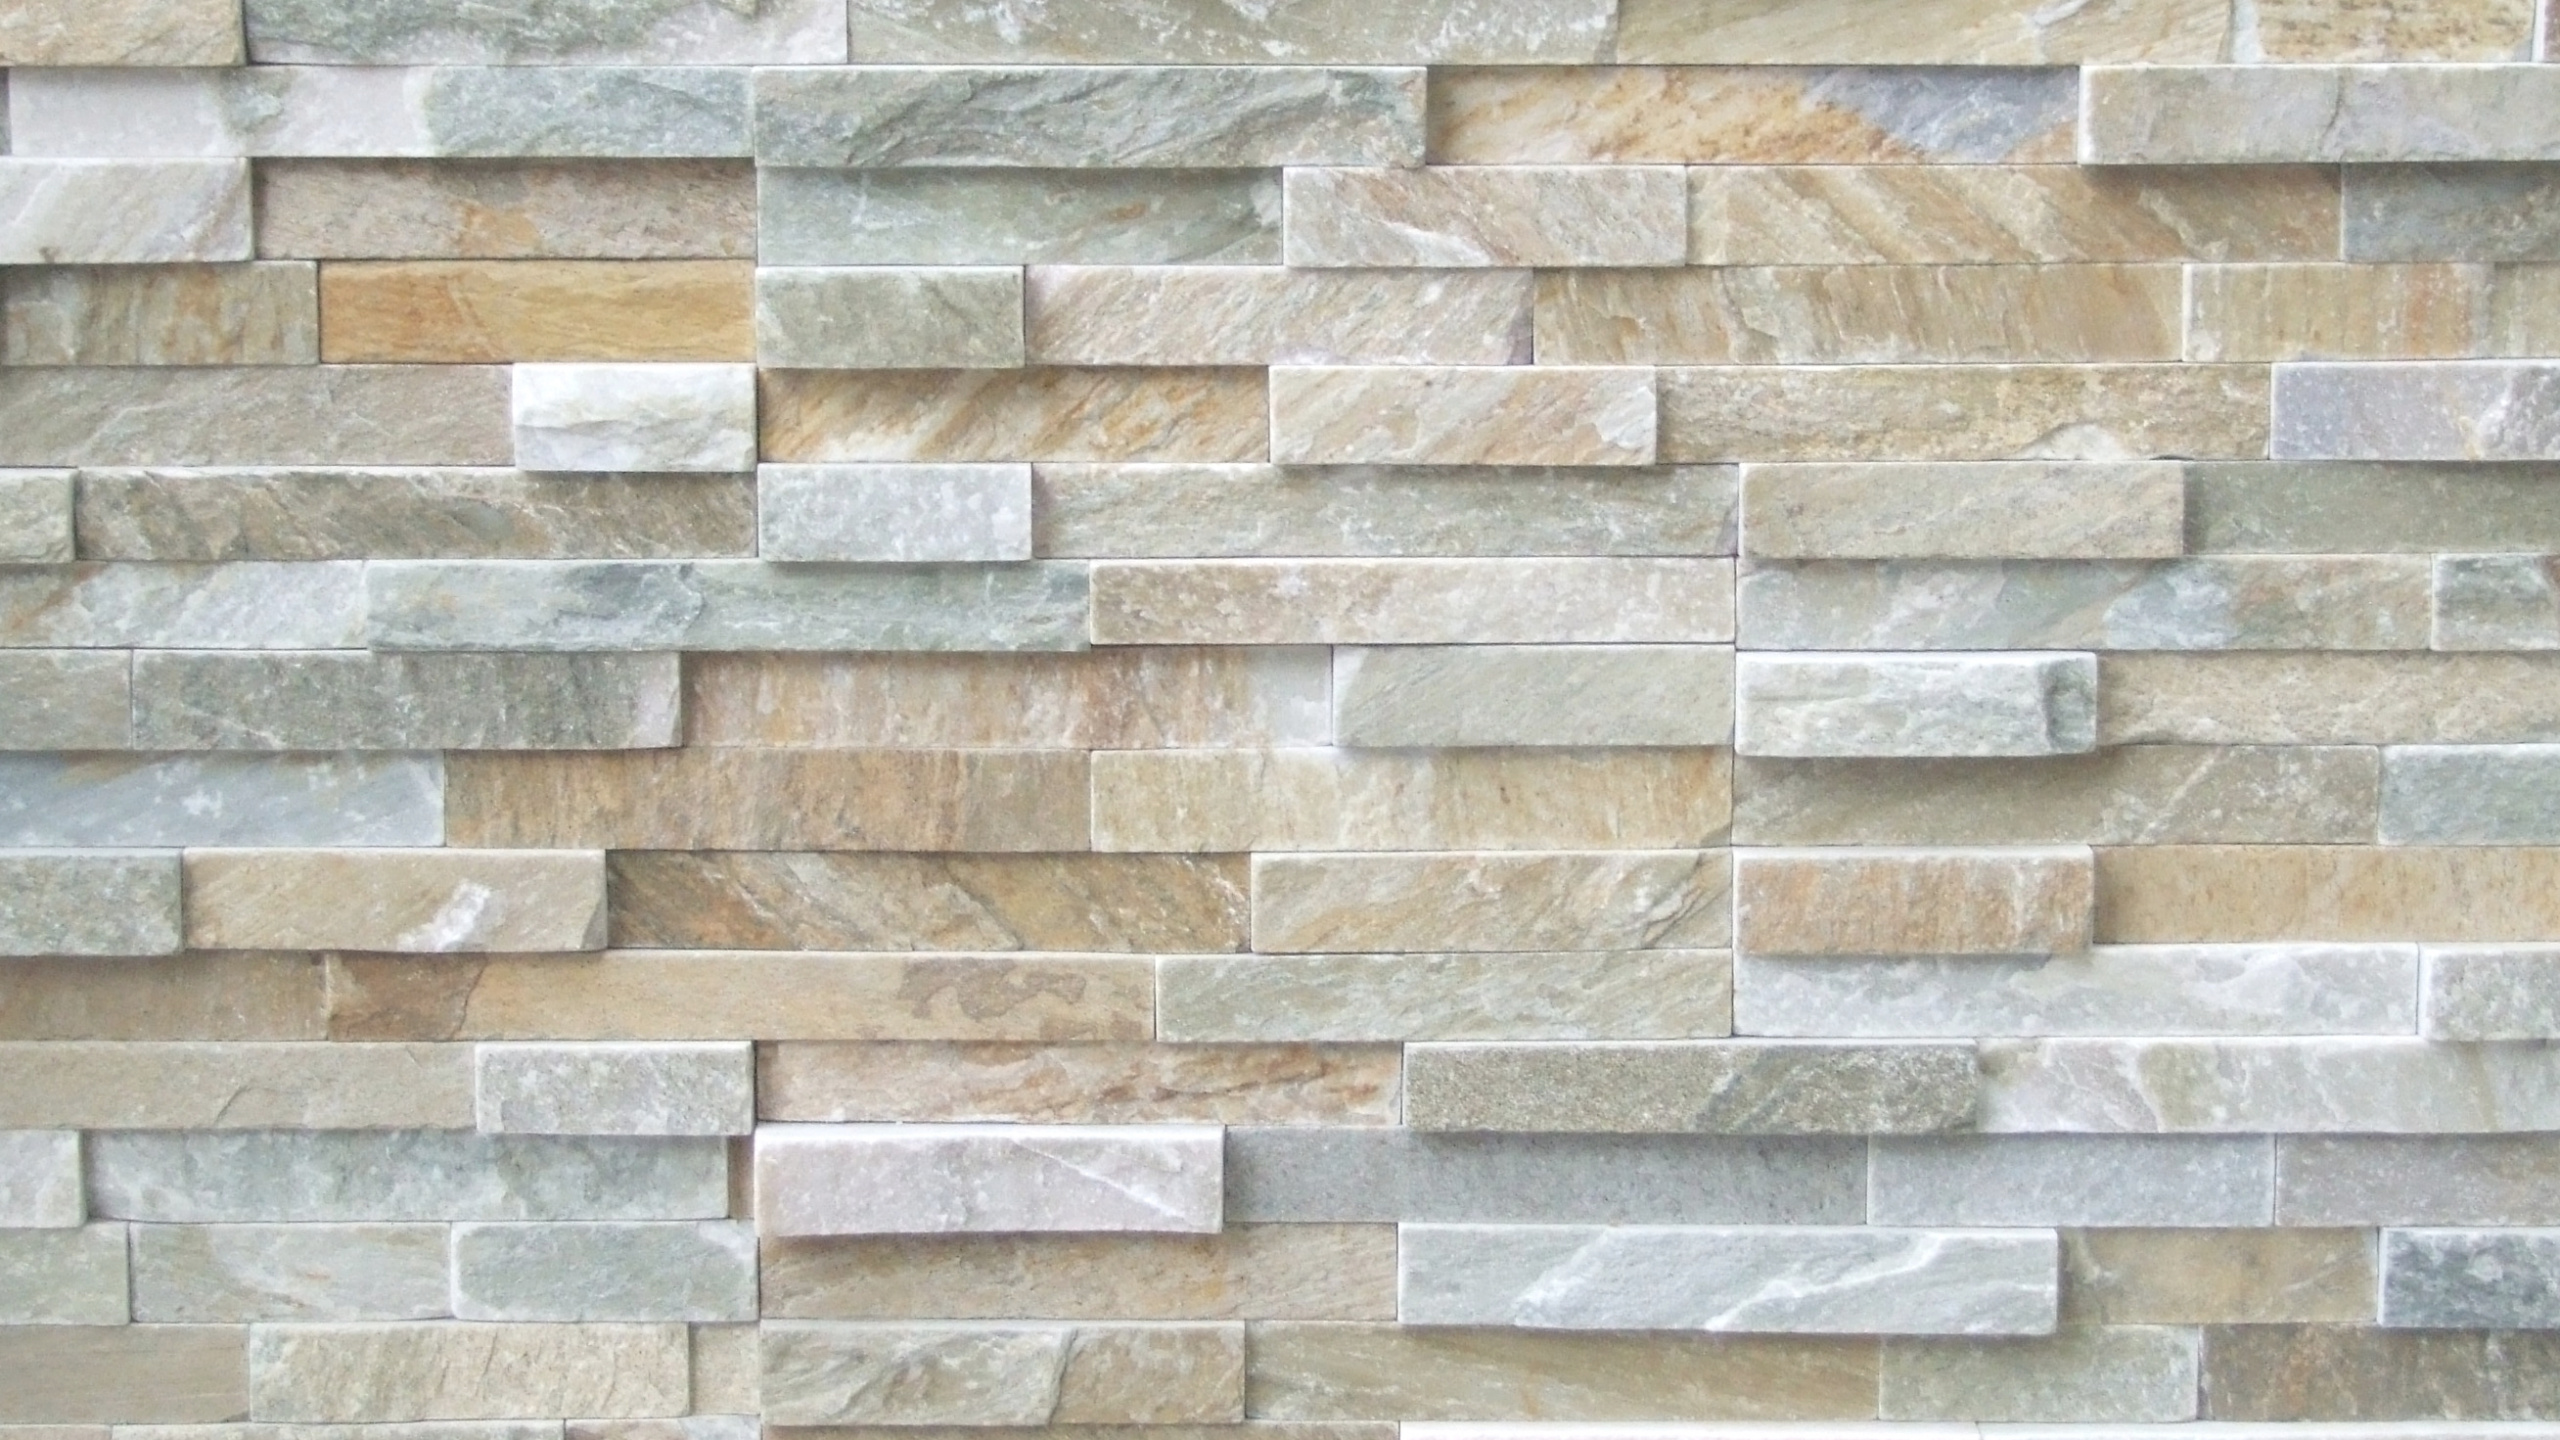 石饰面, 瓷砖, 石壁, 石板, 砌砖 壁纸 2560x1440 允许